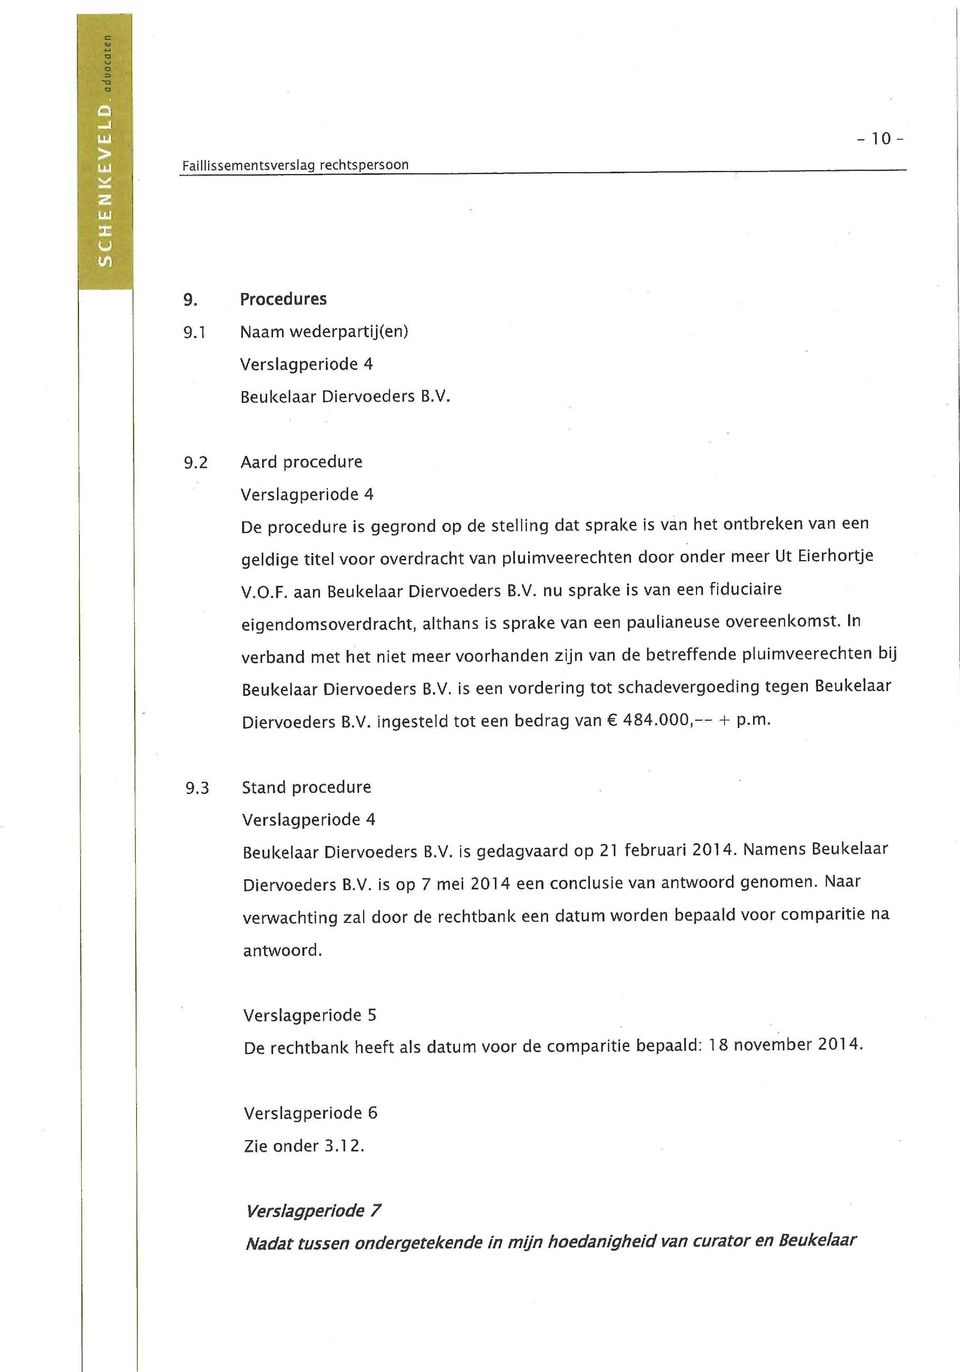 In verband met het niet meer voorhanden zijn van de betreffende pluimveerechten bij Beukelaar Diervoeders B.V. is een vordering tot schadevergoeding tegen Beukelaar Diervoeders B.V. ingesteld tot een bedrag van 484.